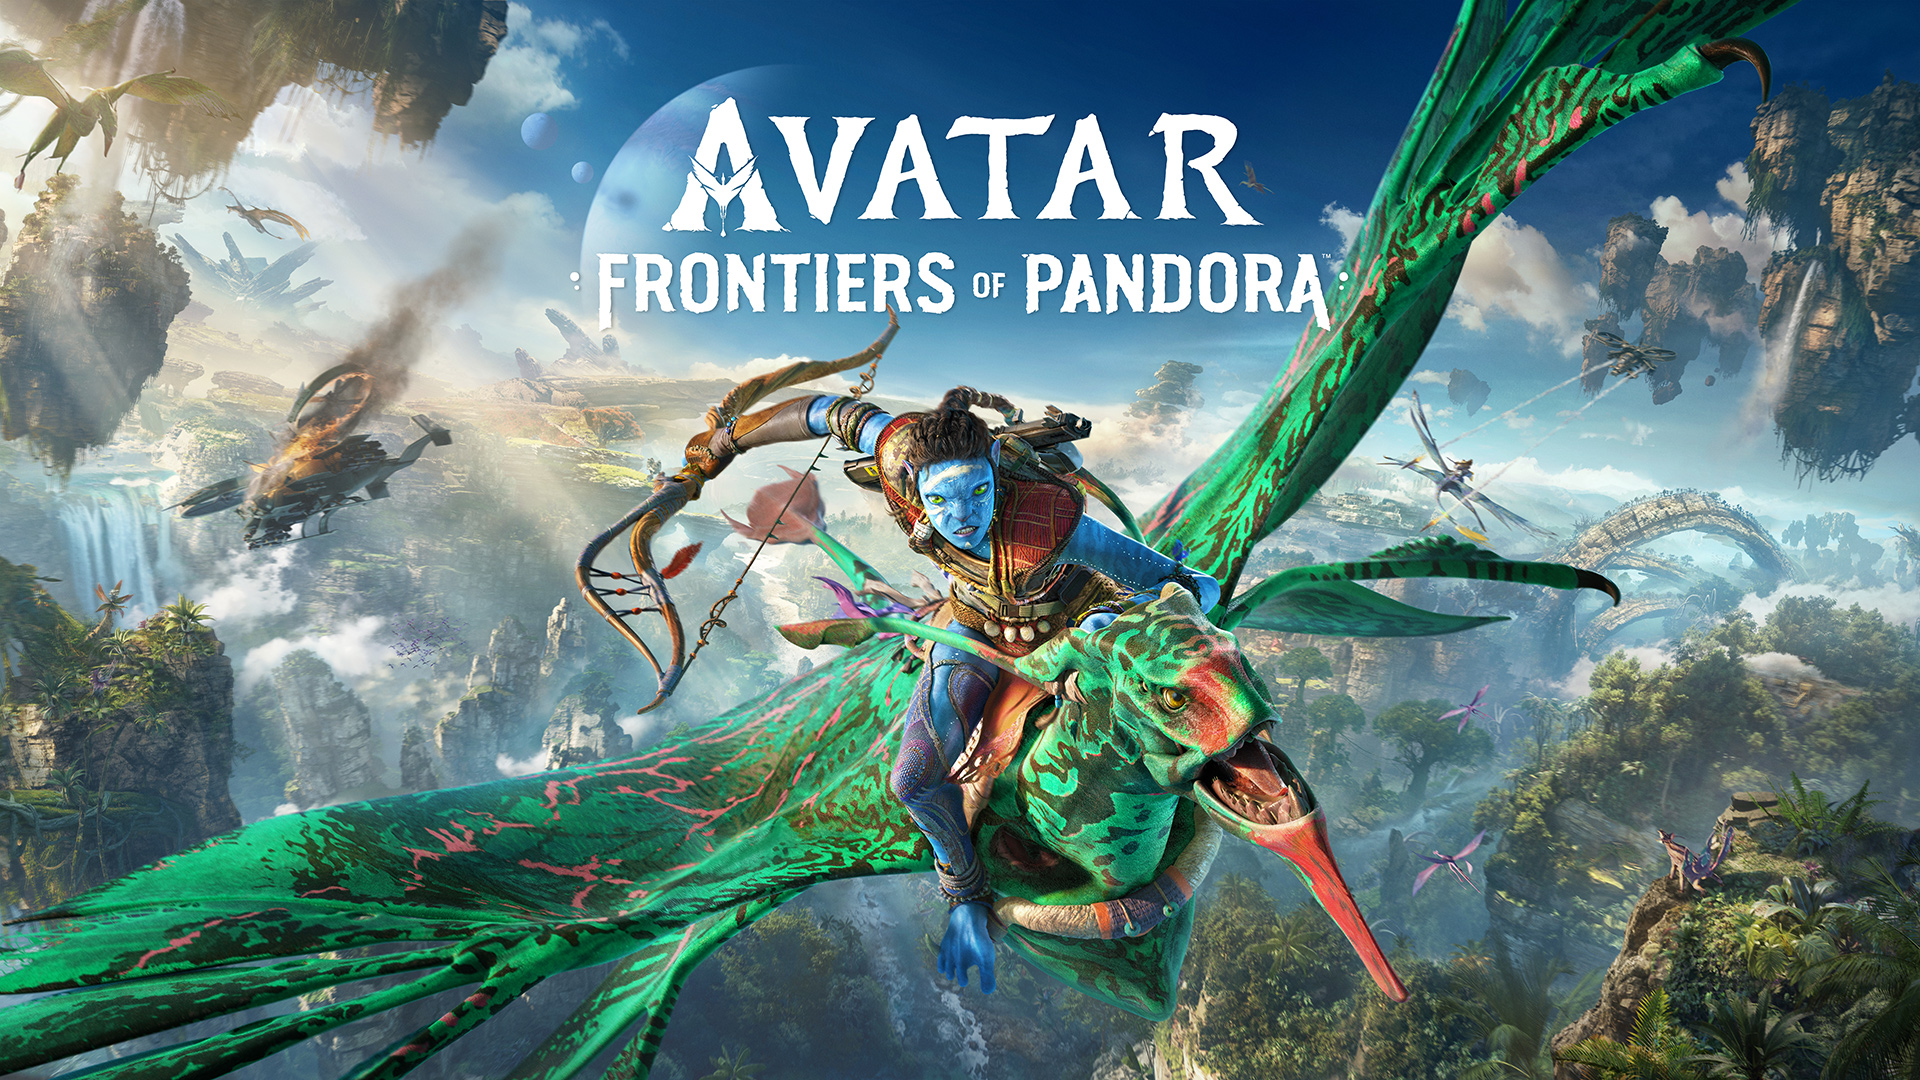 Avatar Frontiers of Pandora (1) Новый АВАТАР - Игра 2023 - Спасаем Пандору от гадких людей